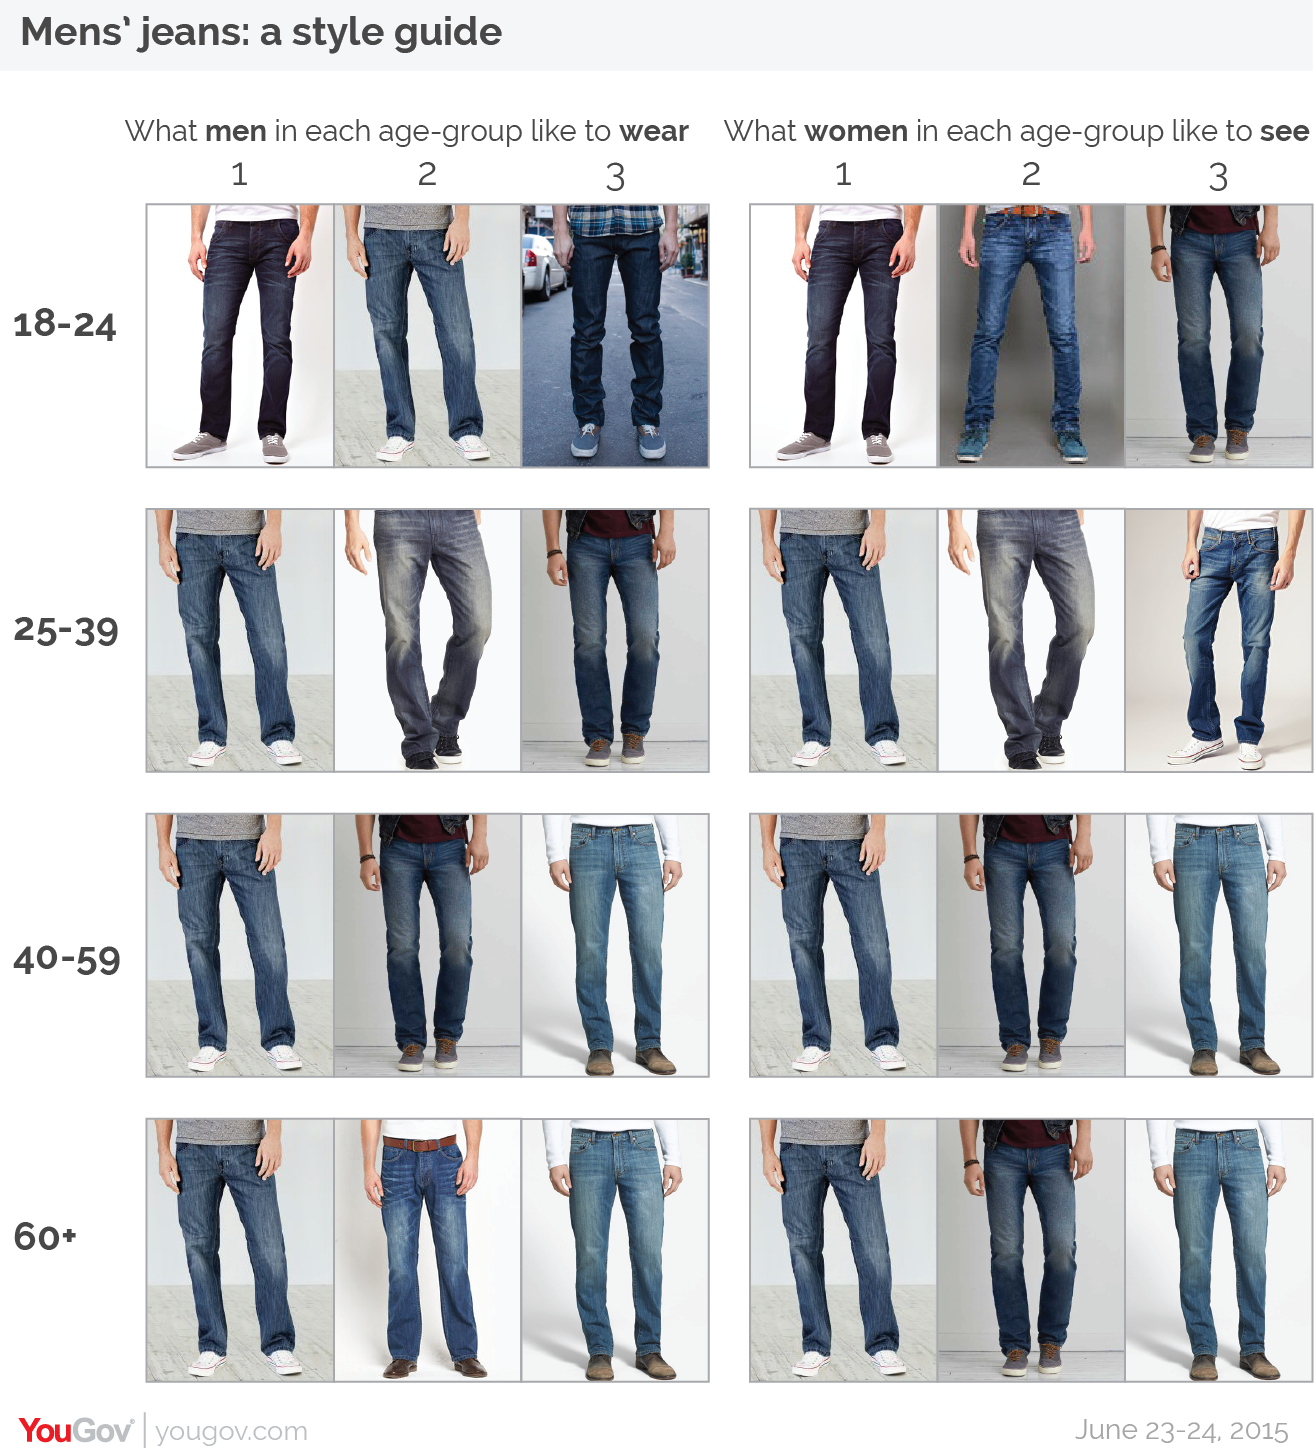 Как определить размер мужских джинсов: советы и таблицы размеров